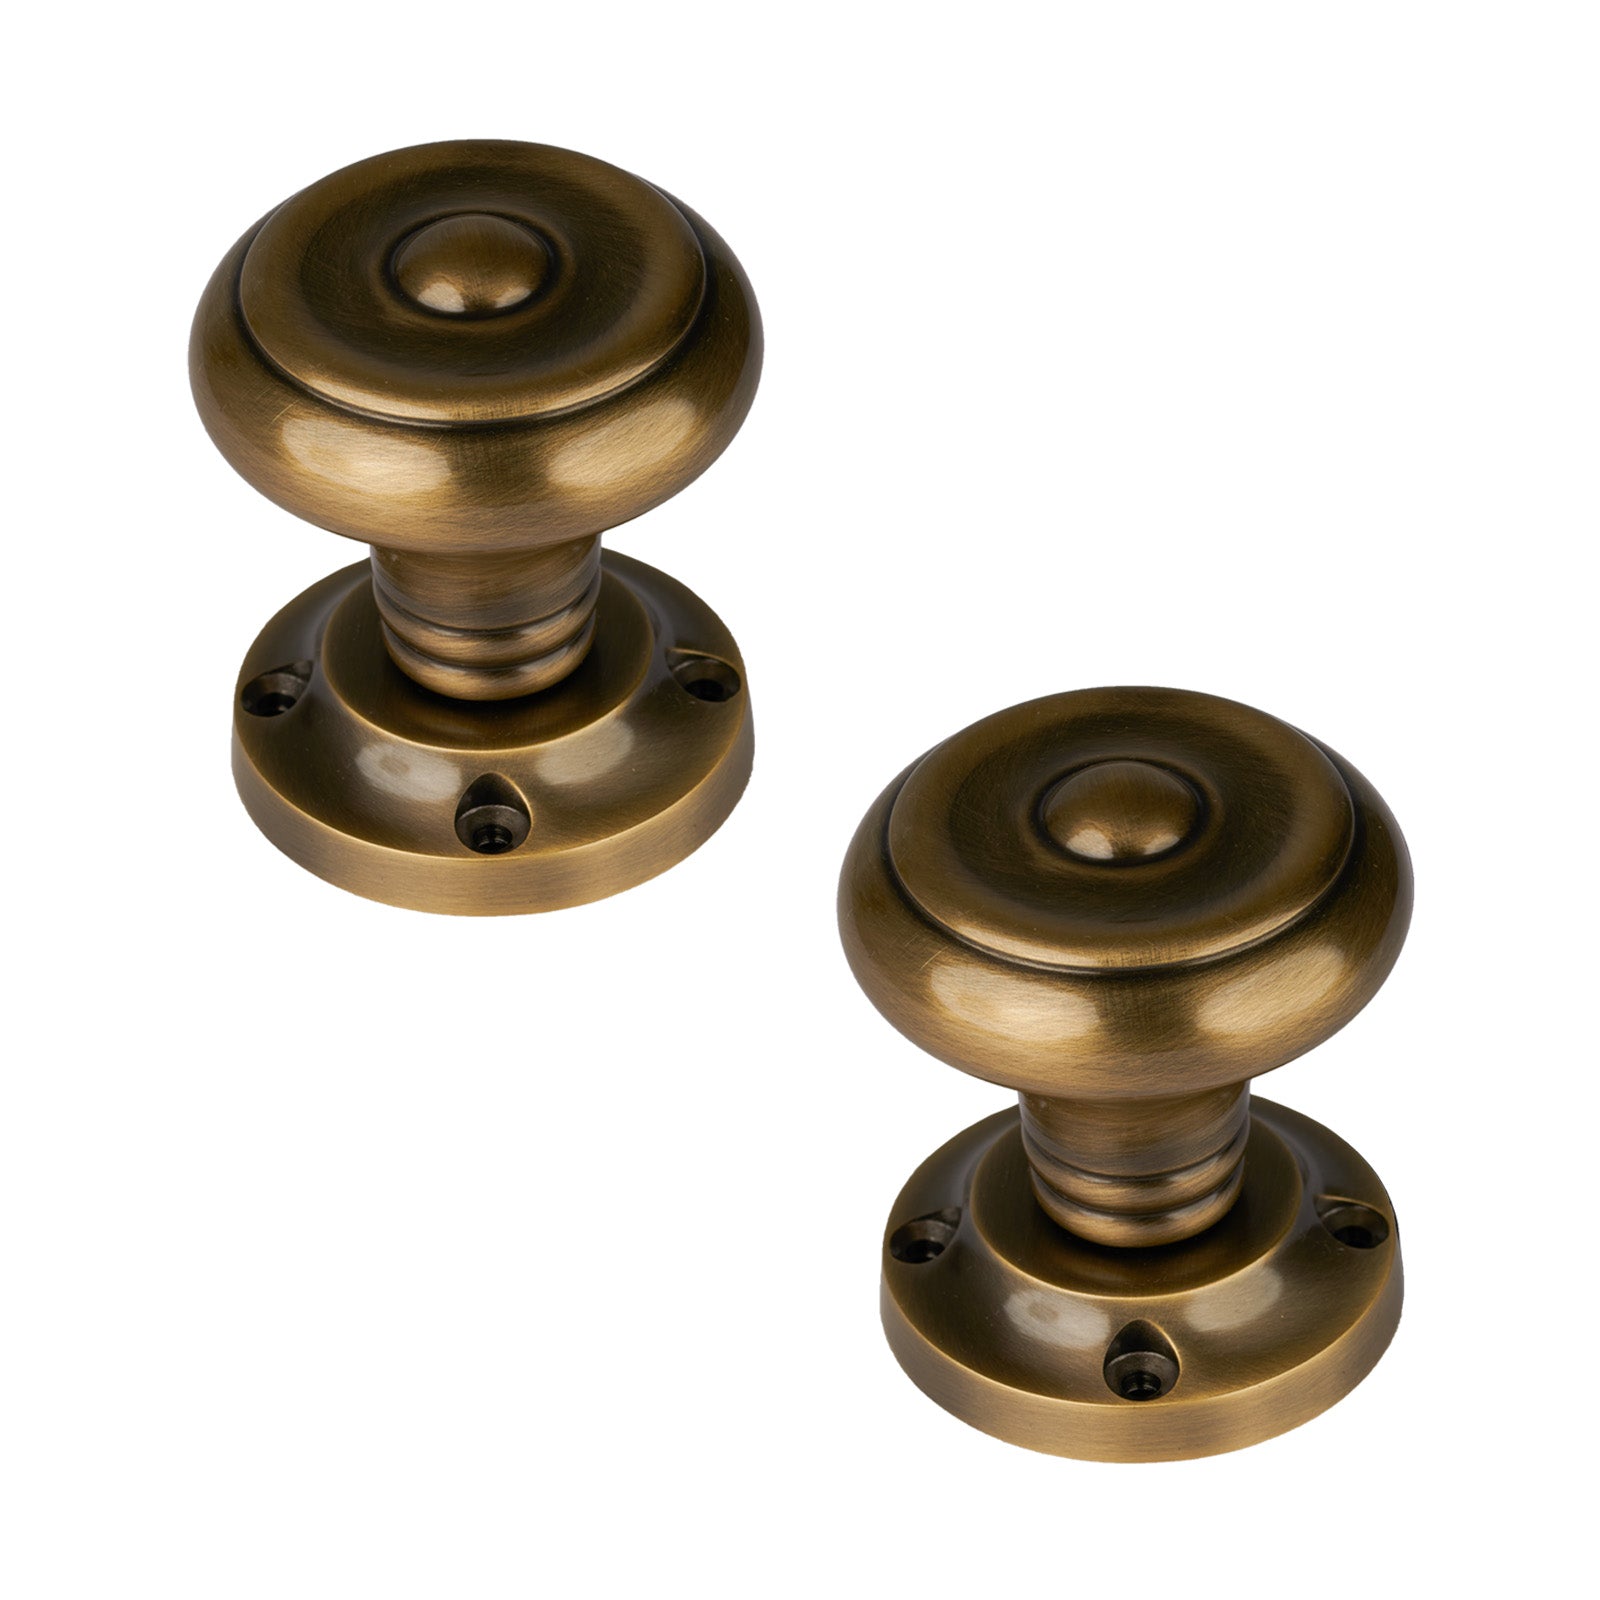 Antique Brass Door Knobs  Traditional brass door knobs